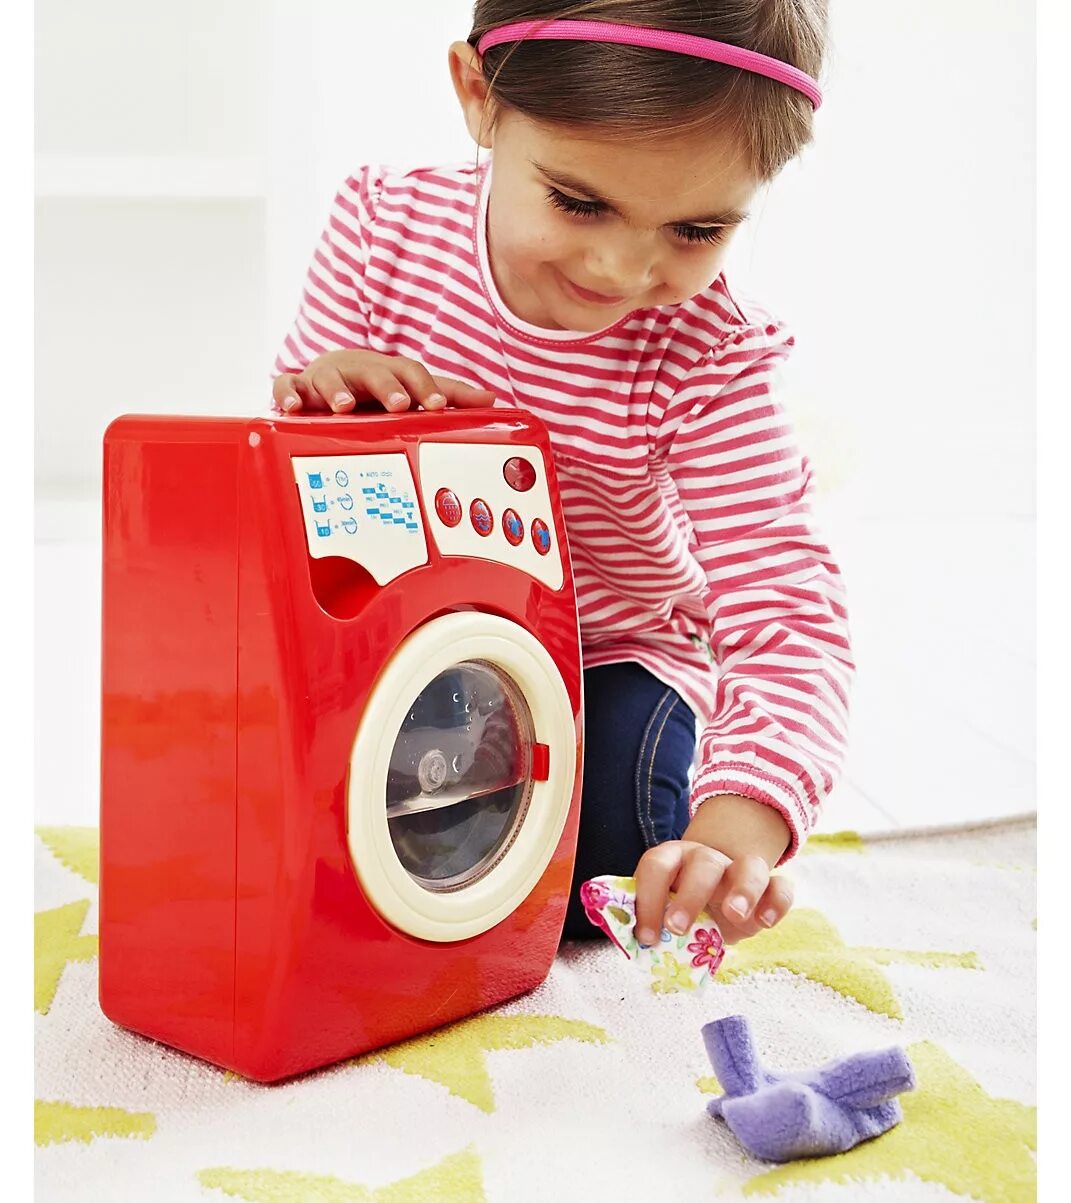 Стиральная машина 3 в 1. Детская игрушечная стиральная машинка артикул 3000 Keenway. Детская стиральная машина двойная 75836. Стиральная машинка смарт Куук игрушечная. Детская стиральная машина АЕГ.